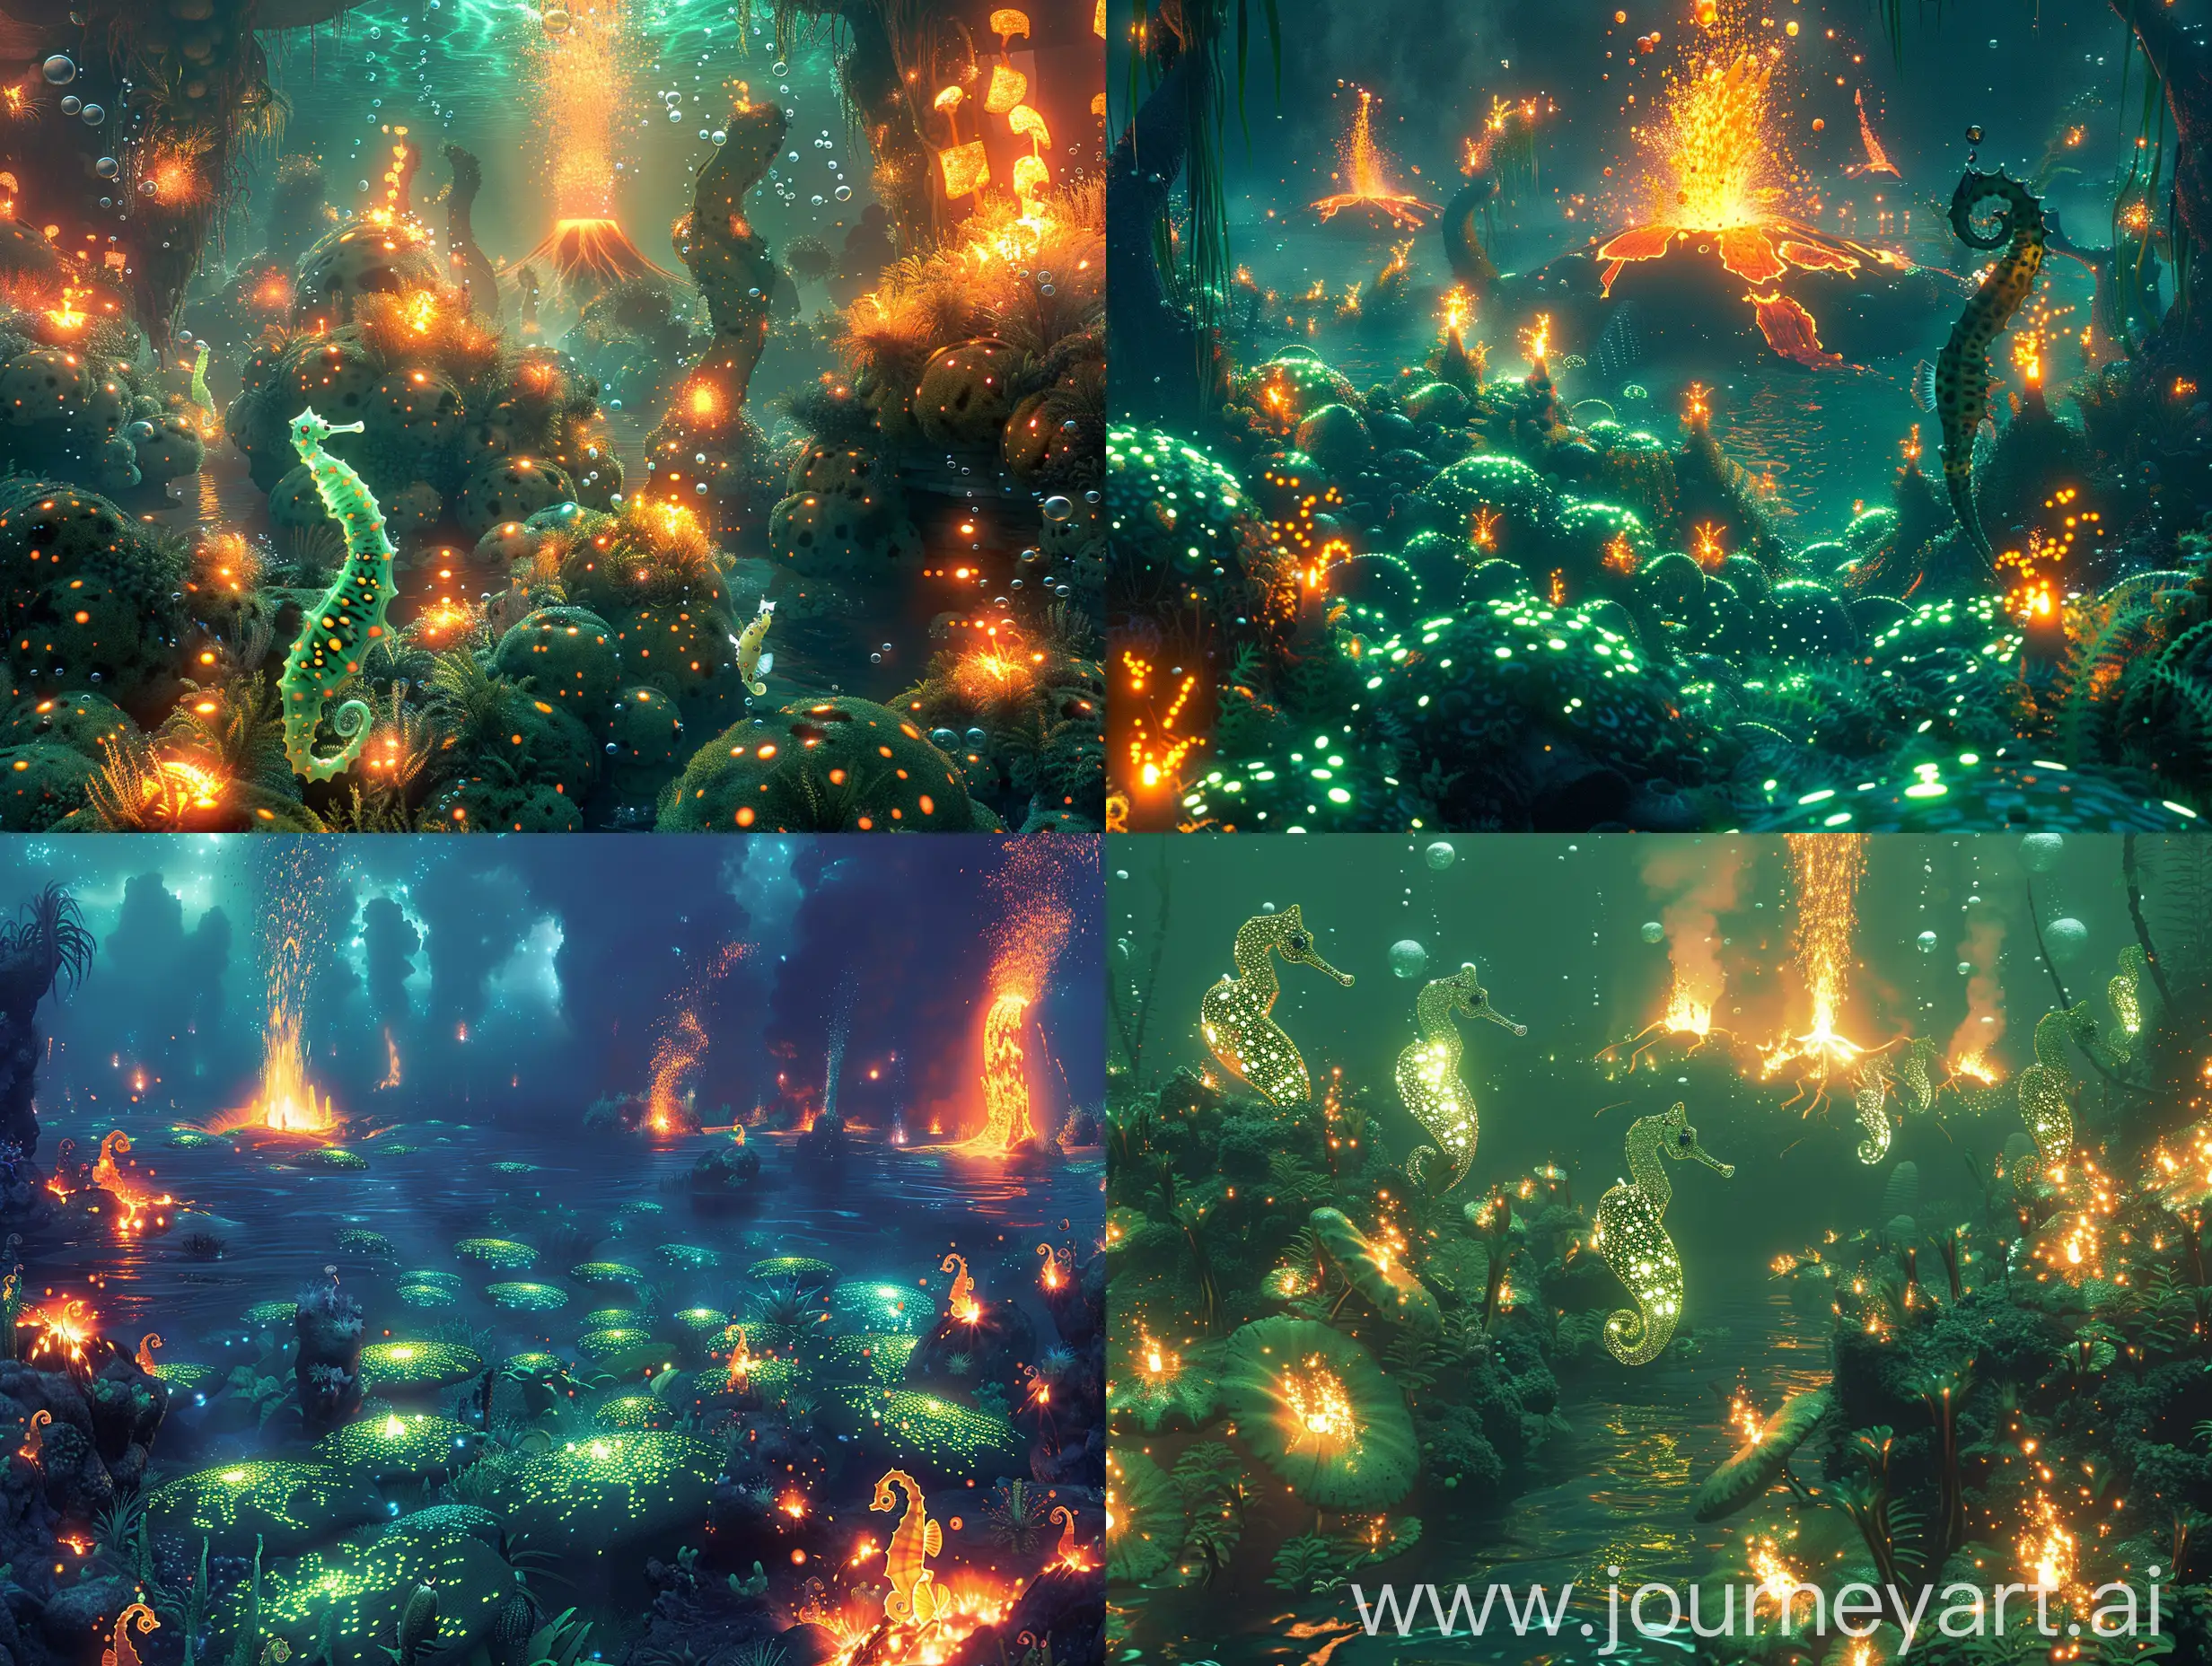 Подводное царство в мире огня, водоросли светятся яркими пятнами создавая таинственную атмосферу. Рыбы-фонарики и морские коники плавают среди мерцающих водорослей. Вдалеке виднеются вулканы извергающие потоки магмы в океан. Огненные пузыри поднимаются к поверхности освещая подводный мир яркими вспышками. Вокруг вулканов танцуют подводные создания, атмосфера наполнена теплом и волнением. --quality 2 --s 250